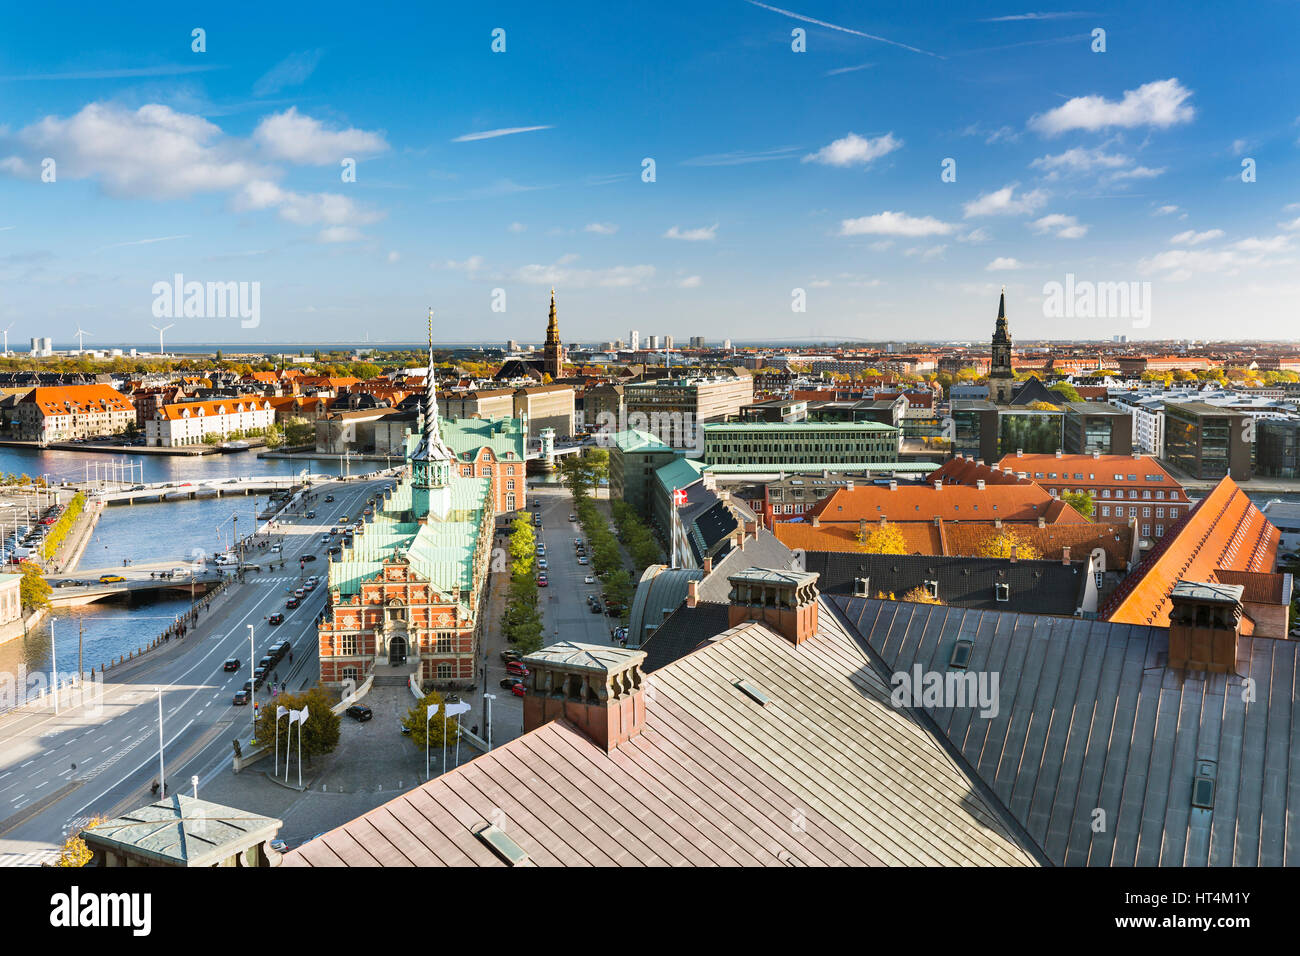 Vista sul centro di Copenhagen con il vecchio Borsen (stock exchange) nel centro, Danimarca Foto Stock